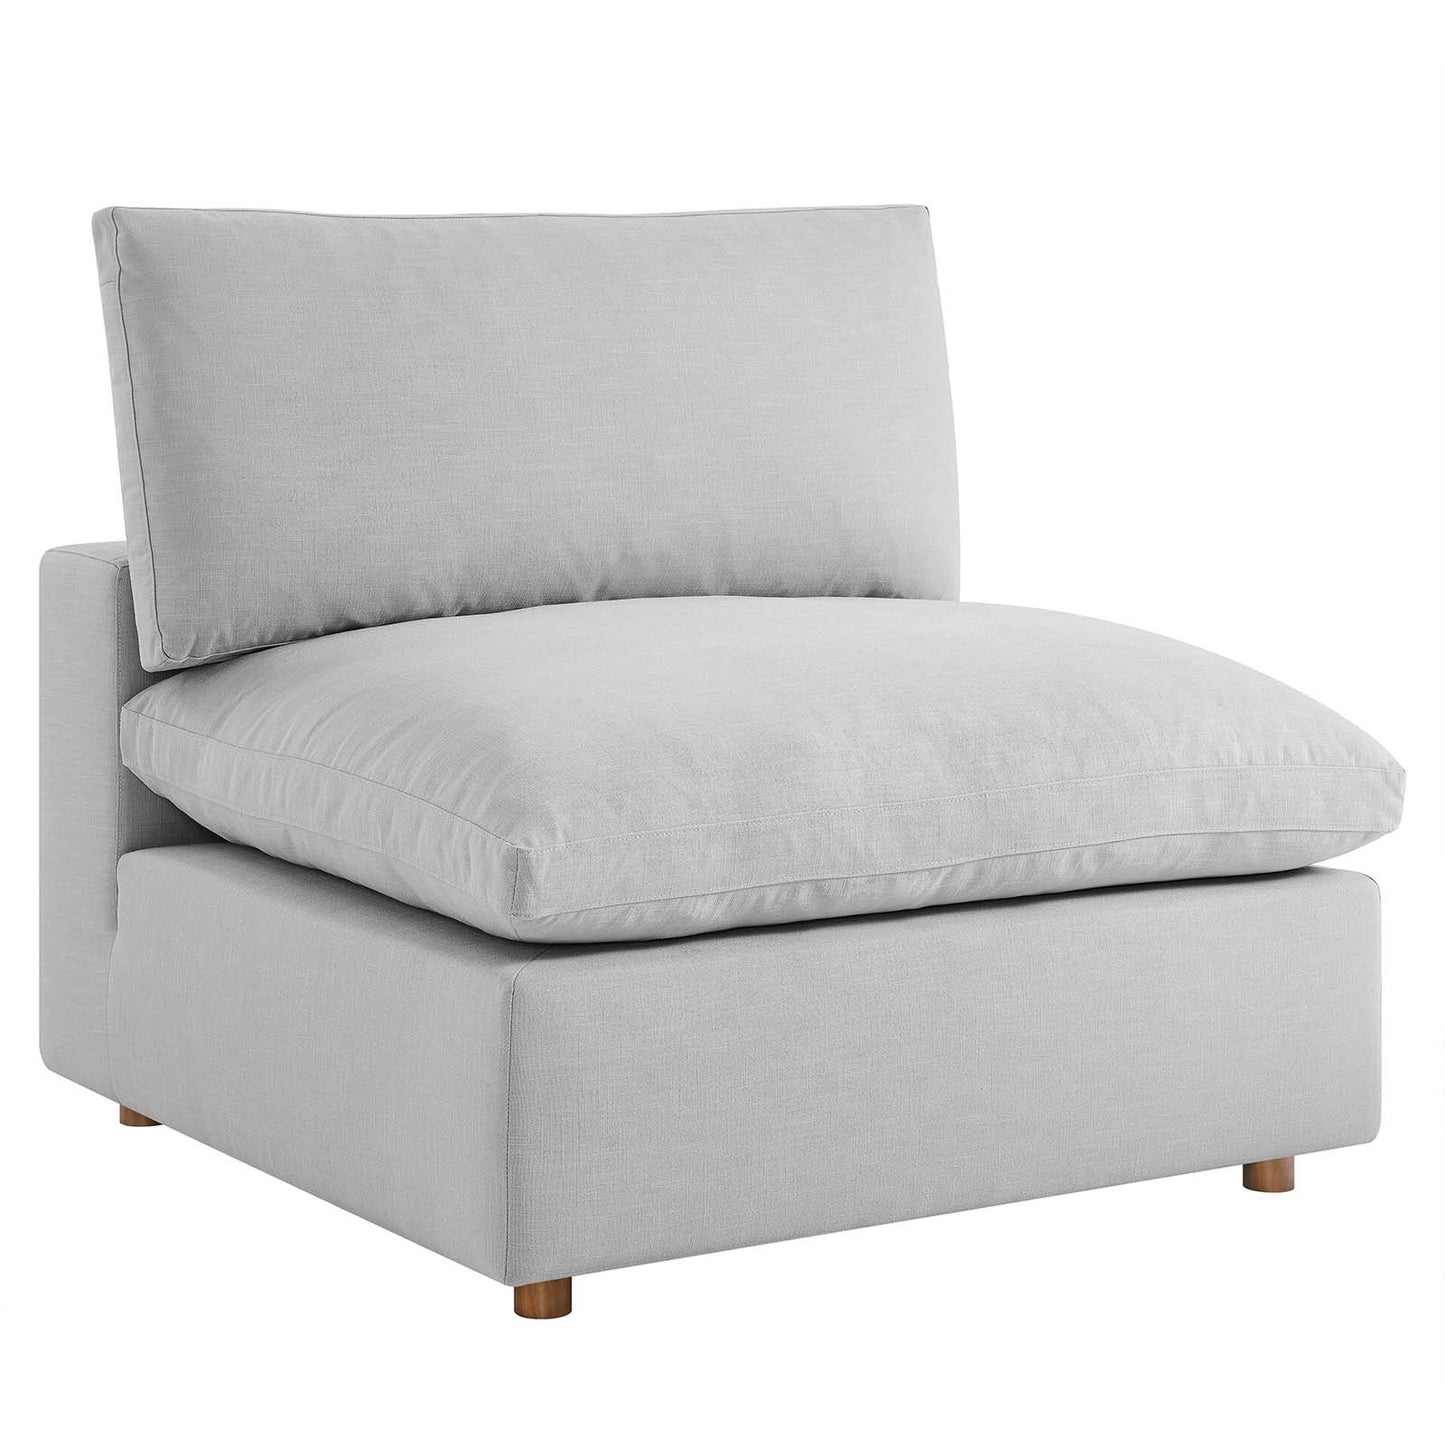 Commix Down Filled Overstuffed 5-Piece Armless Sectional Sofa Light Gray EEI-3360-LGR